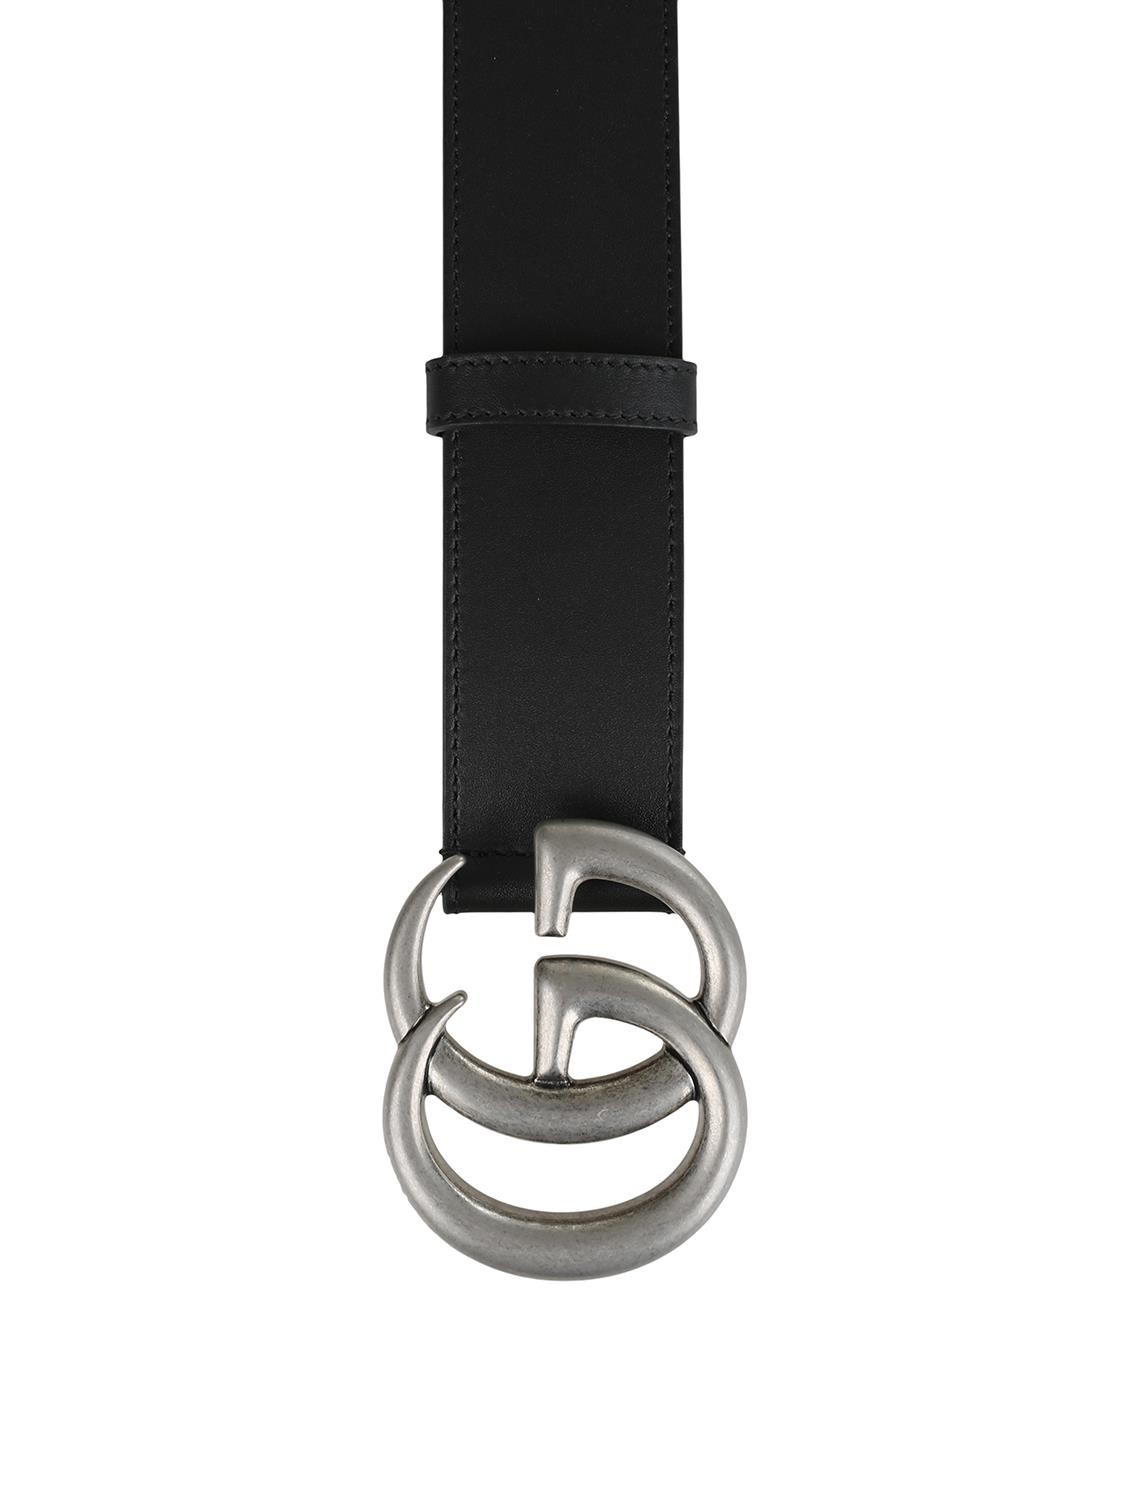 shop GUCCI Sales Cintura: Gucci Cintura in pelle liscia con fibbia GG.
Composizione: 100% pelle nera.
Finiture color palladio.
Larghezza 4 cm.
Made in Italy.. 397660 AP00N-1000 number 5997892